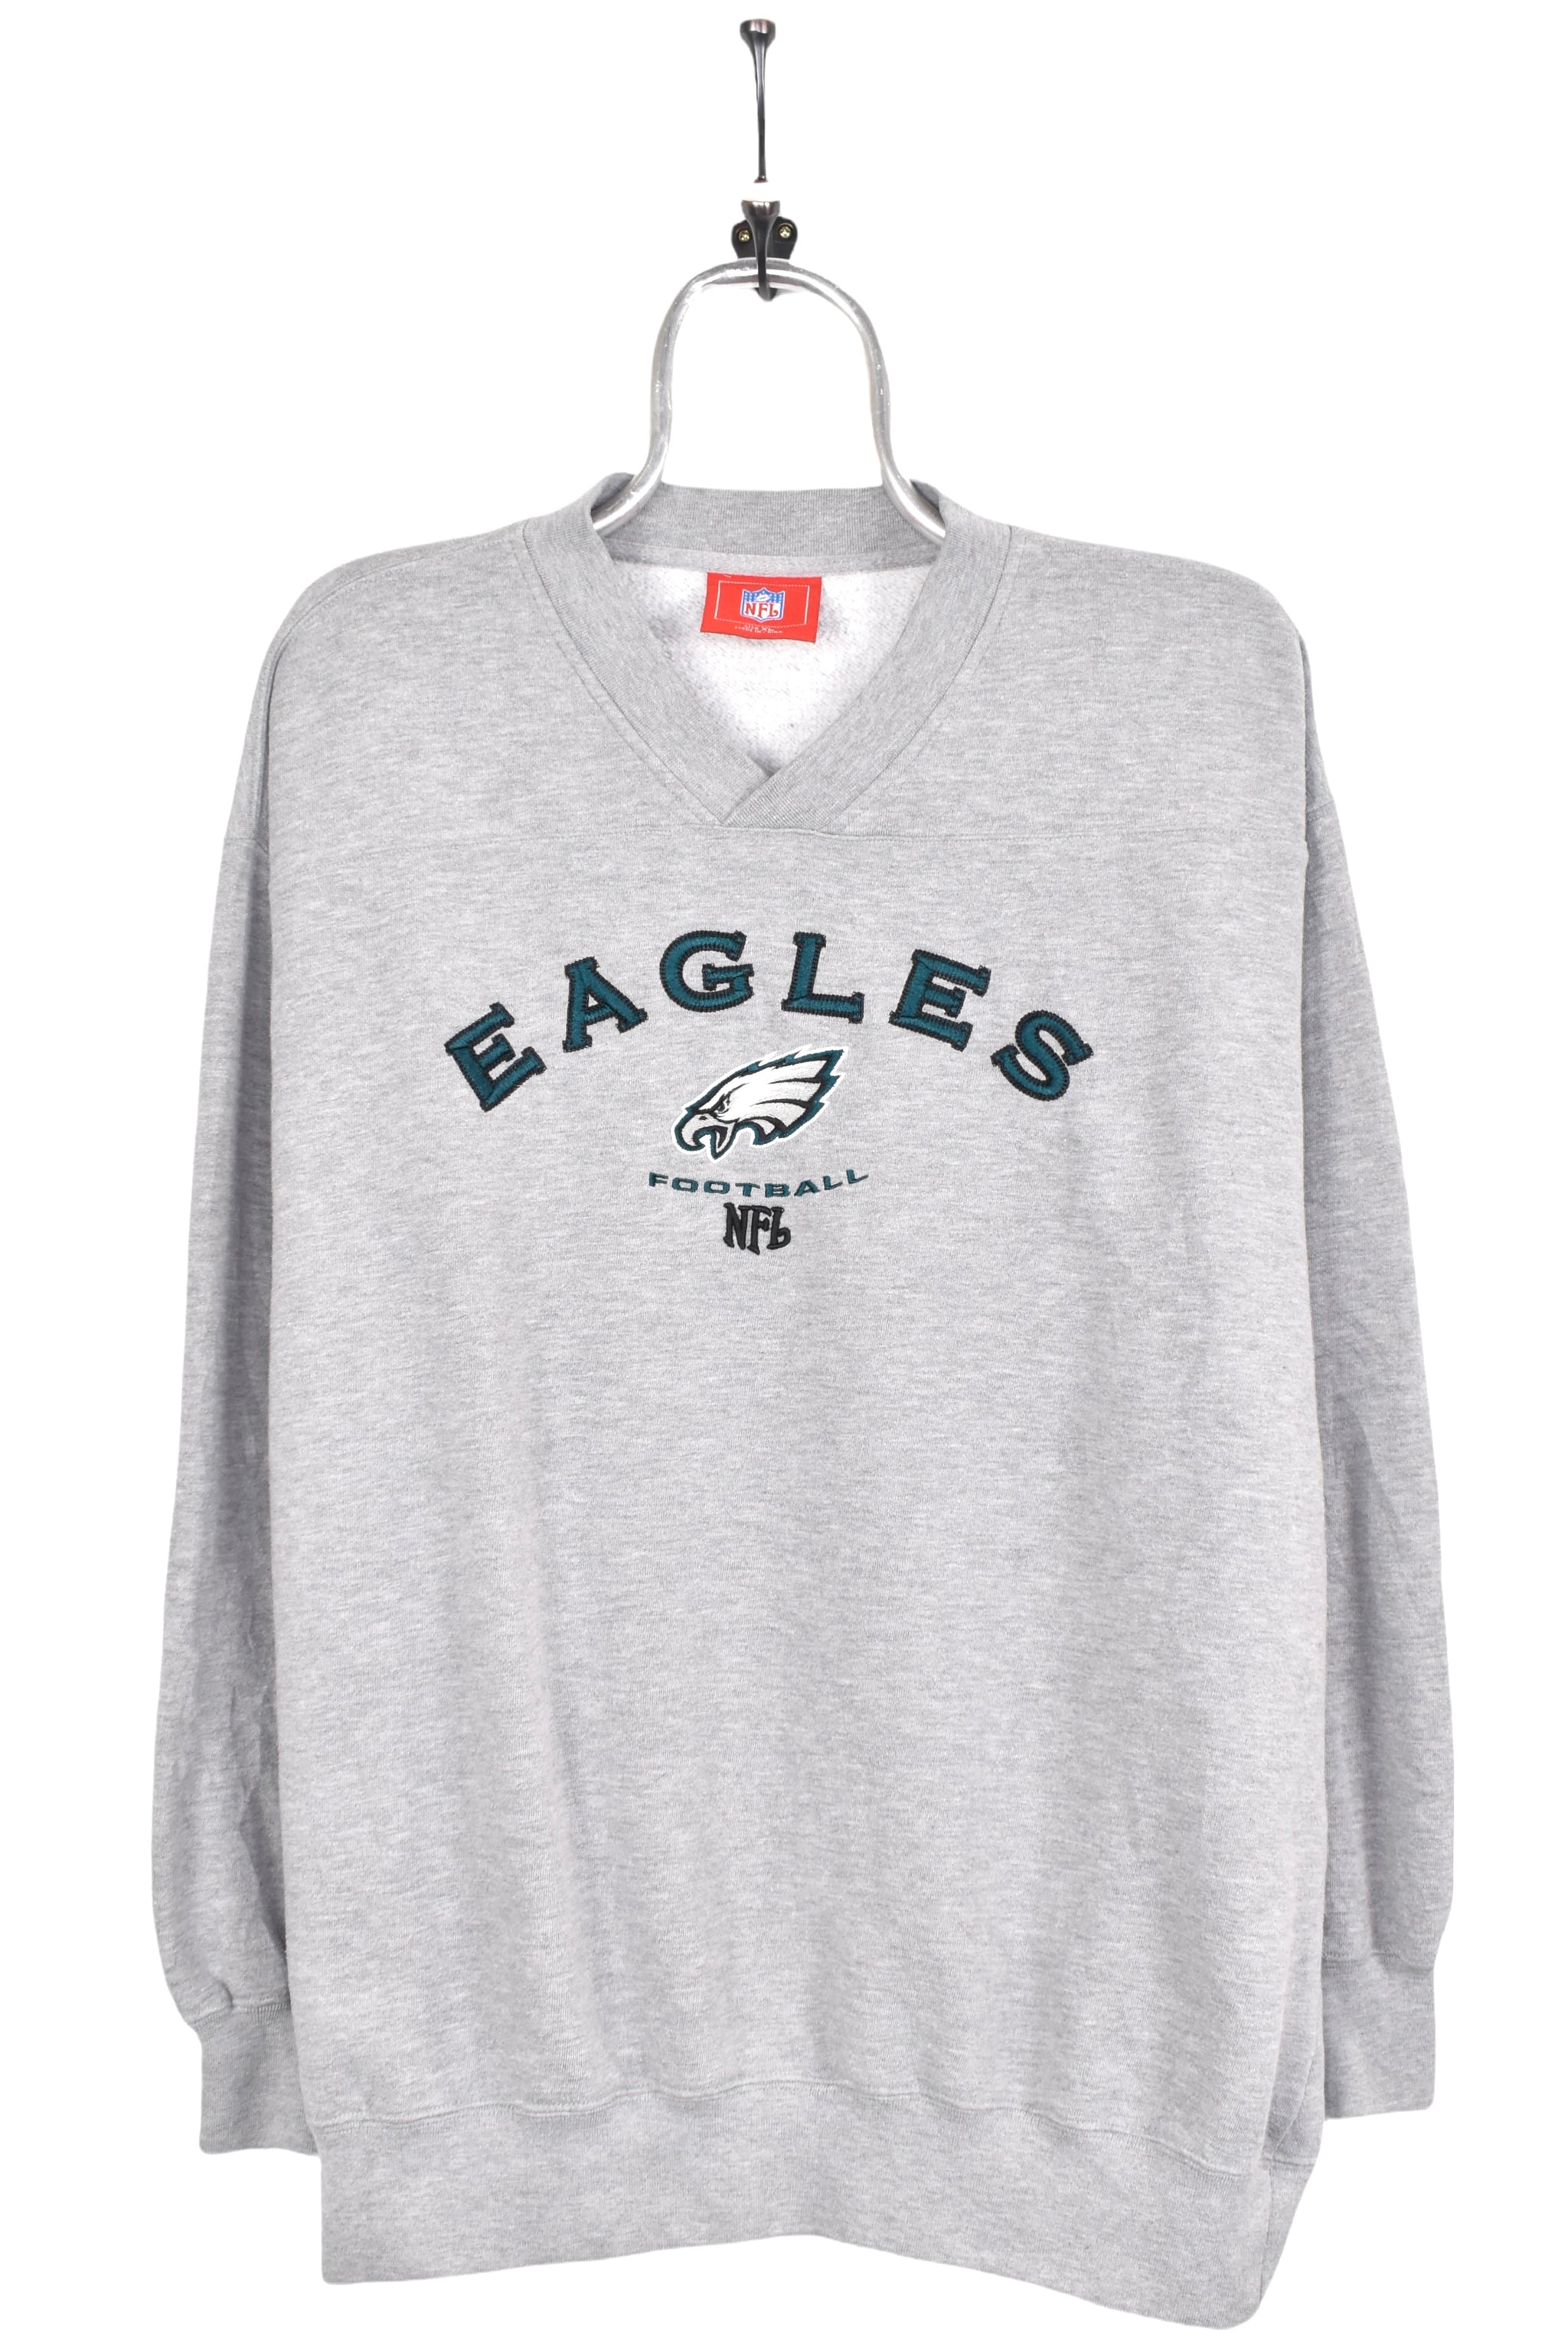 Philly Sweatshirt Vintage Philadelphia Football Retro - Anynee